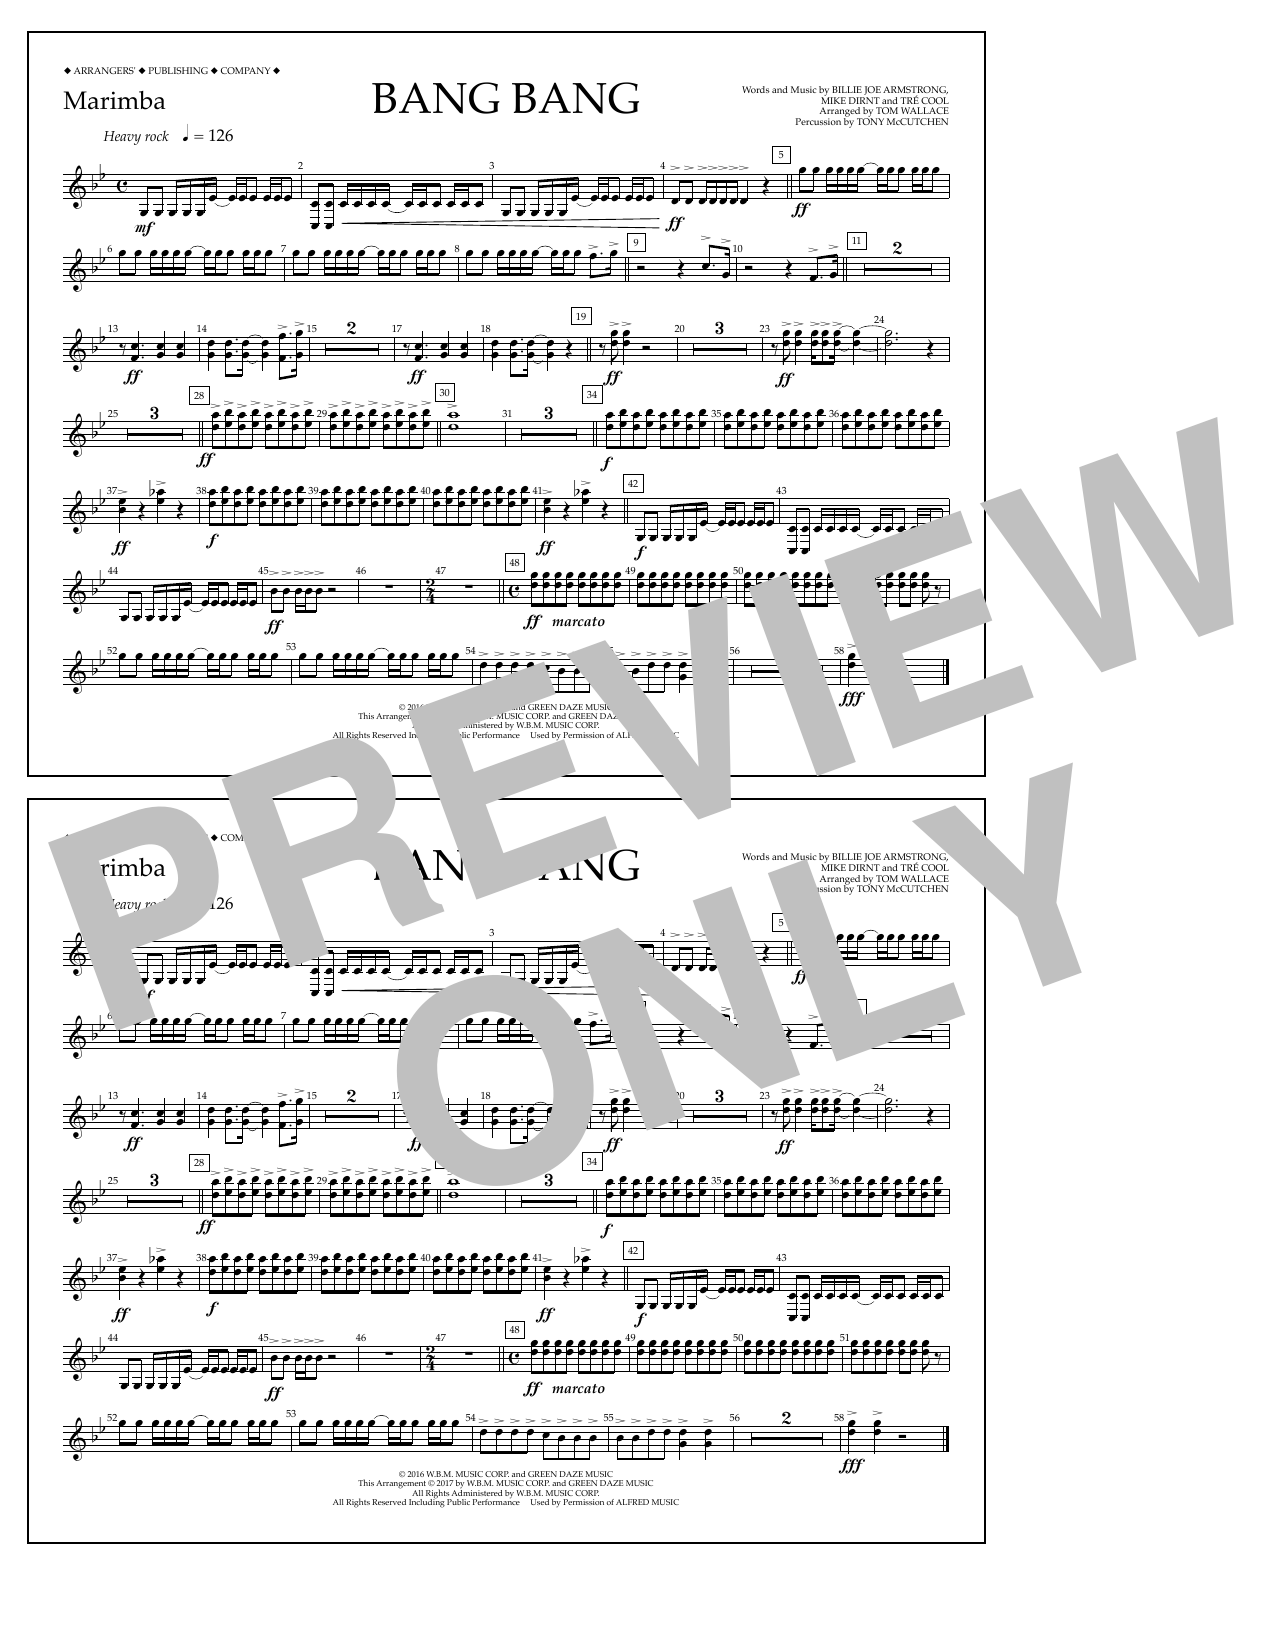 Tom Wallace Bang Bang - Marimba Sheet Music Notes & Chords for Marching Band - Download or Print PDF